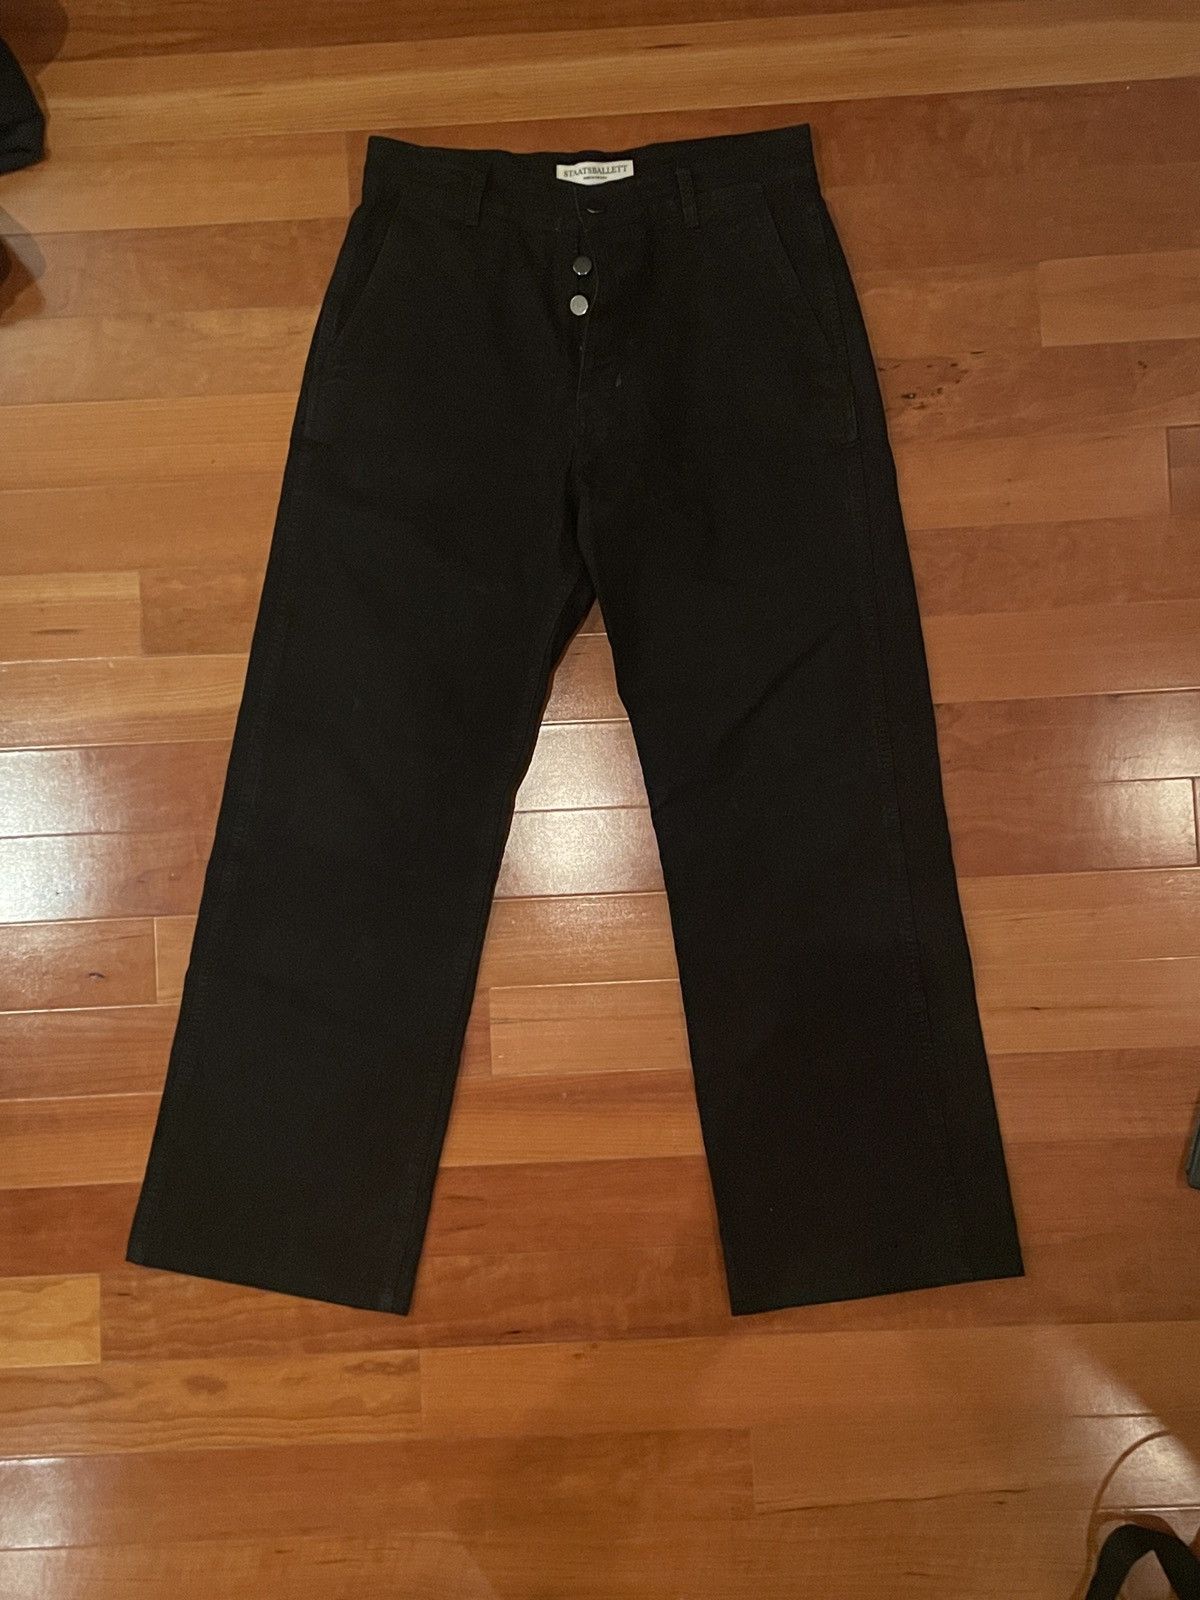 Staatsballett Black Canvas Pants 34 (31 Inseam)